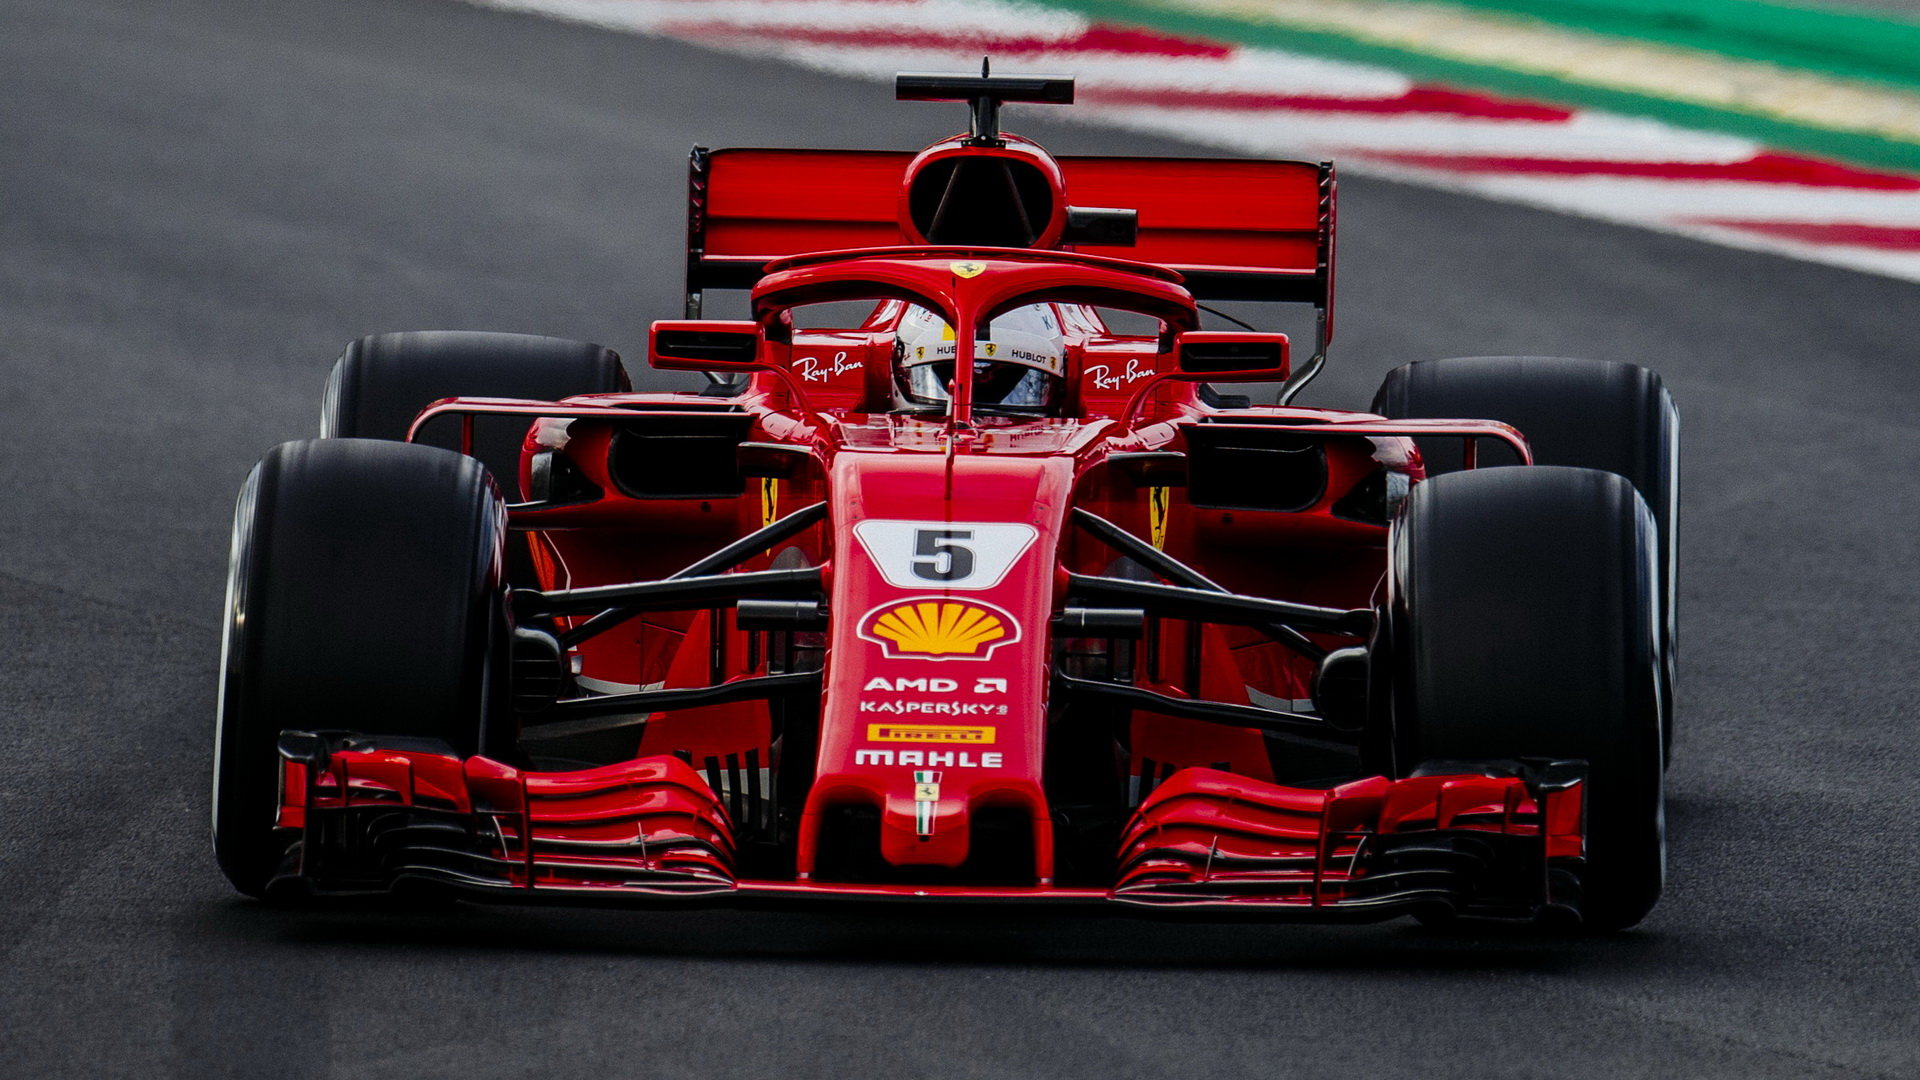 Sebastian Vettel v druhých předsezonních testech v Barceloně